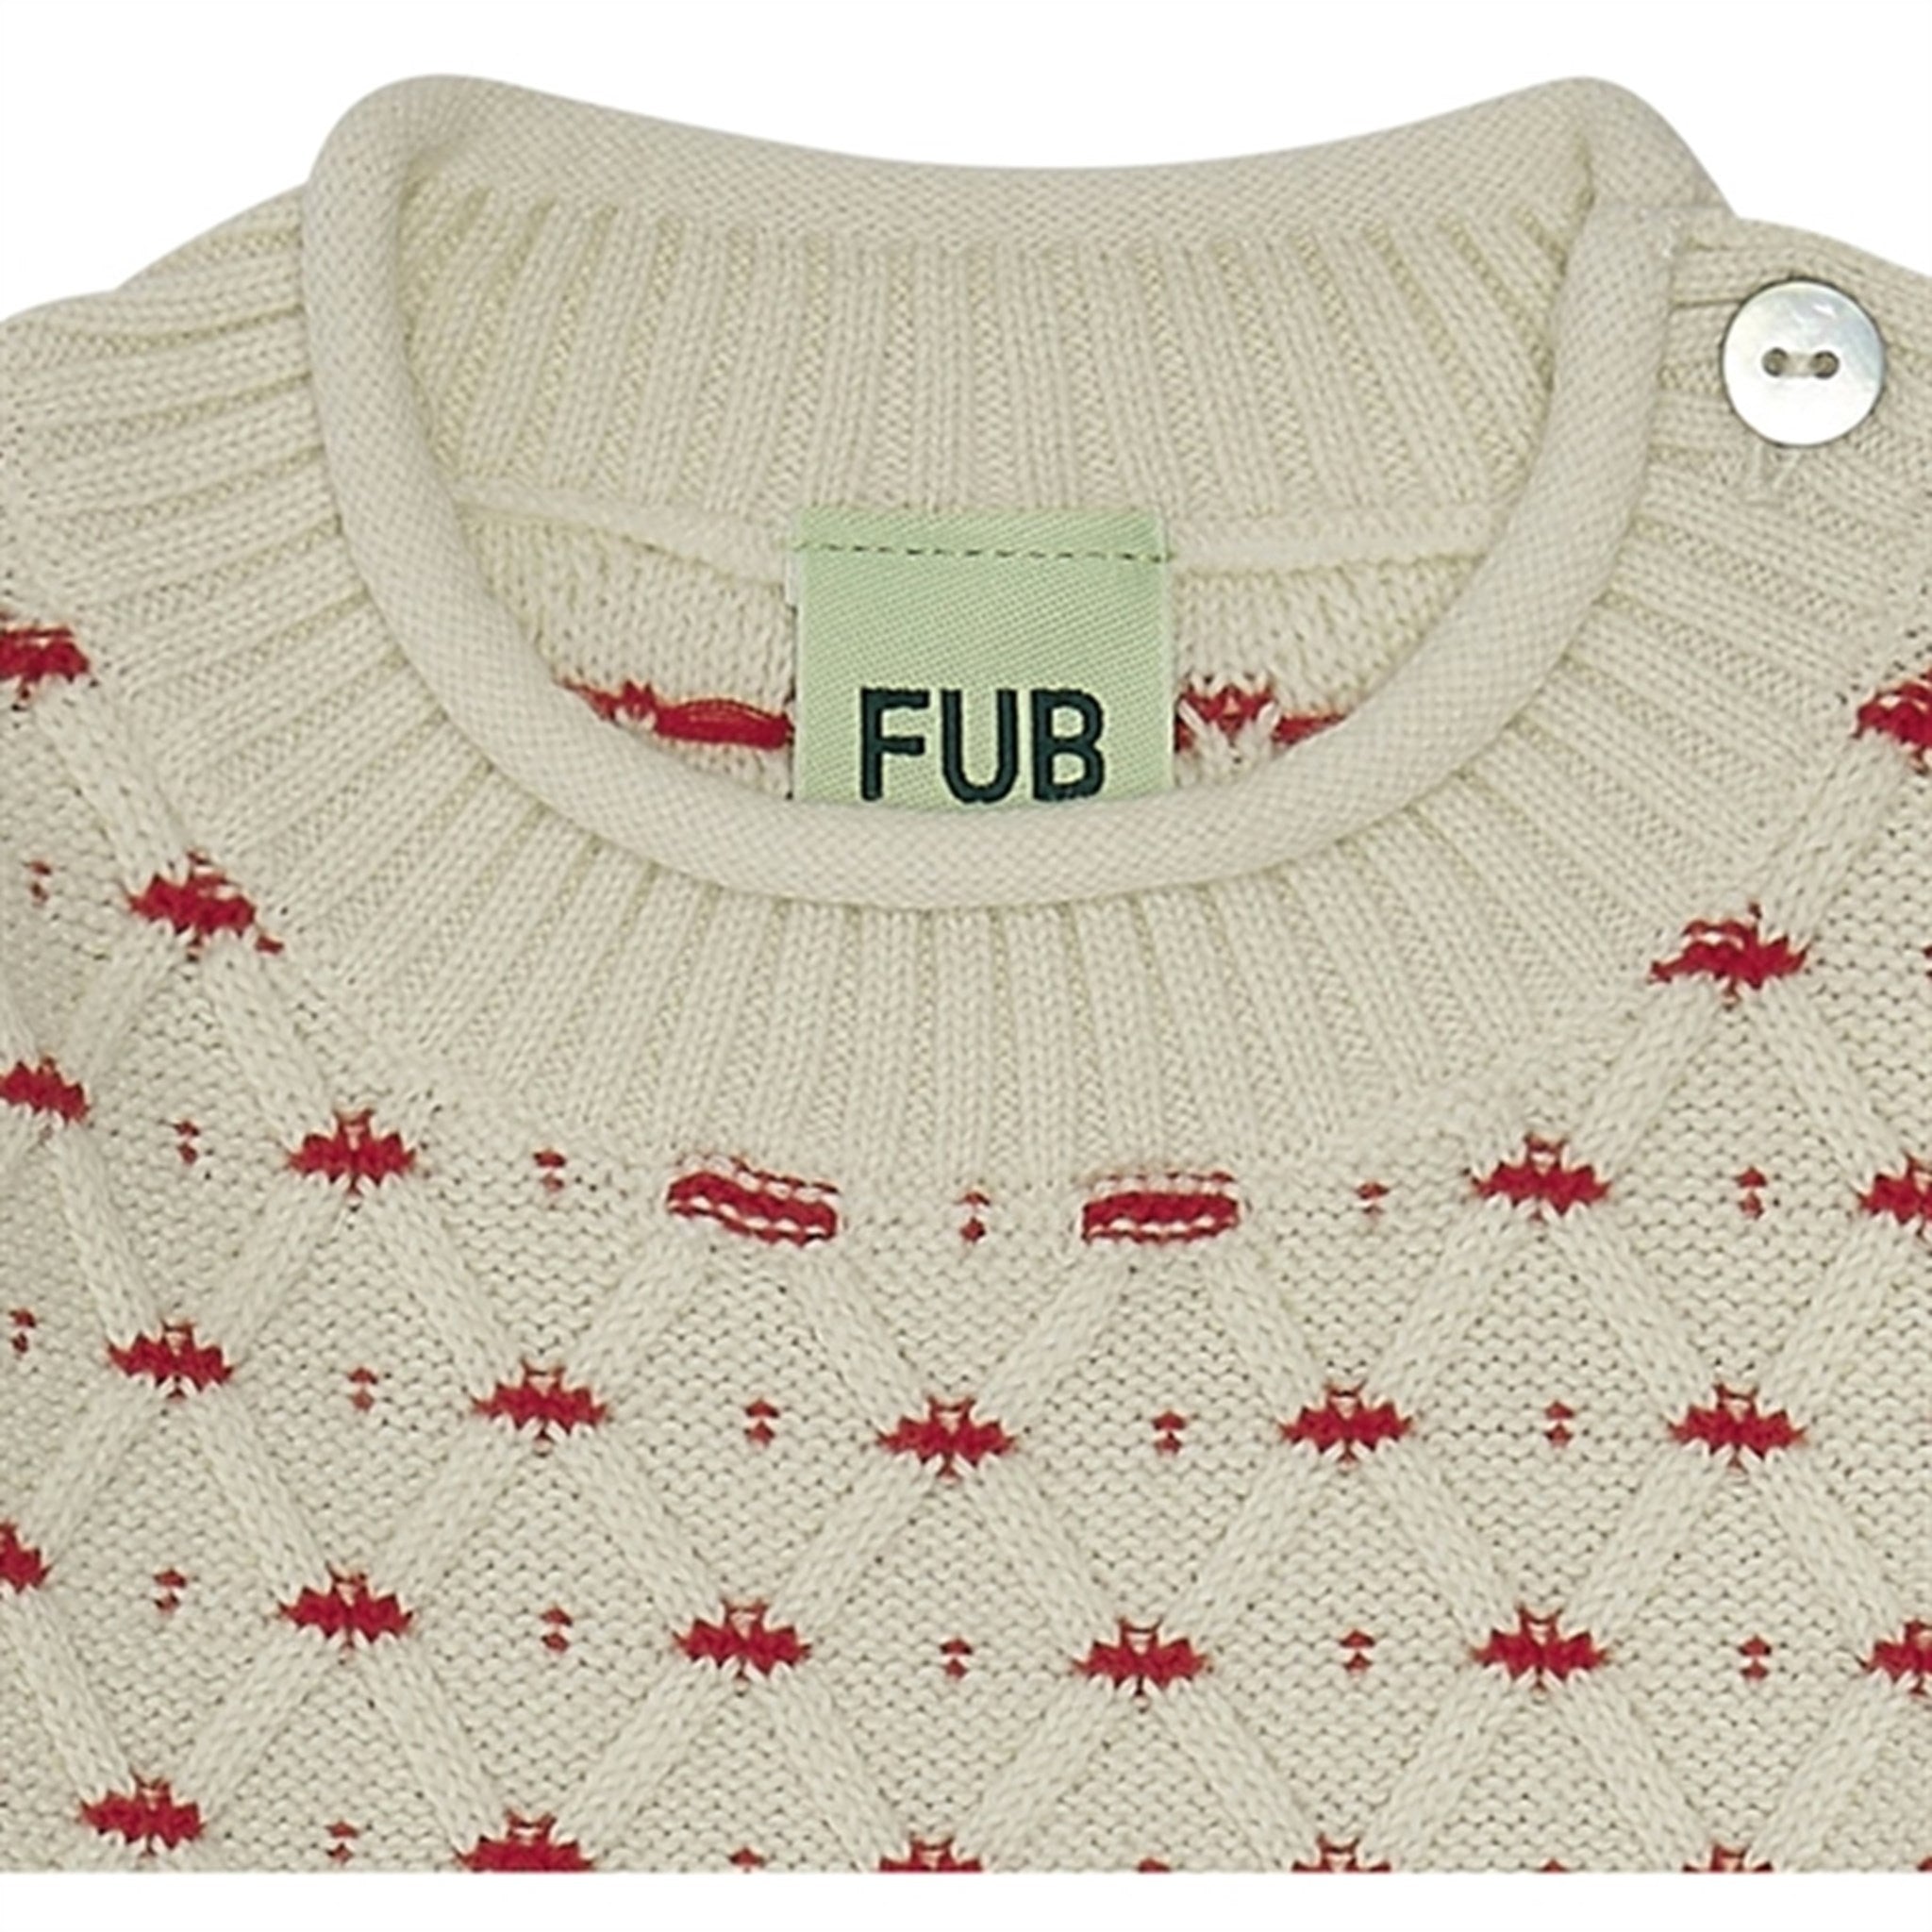 FUB Bebis Rhombus Sweater Ecru/Bright Red 2